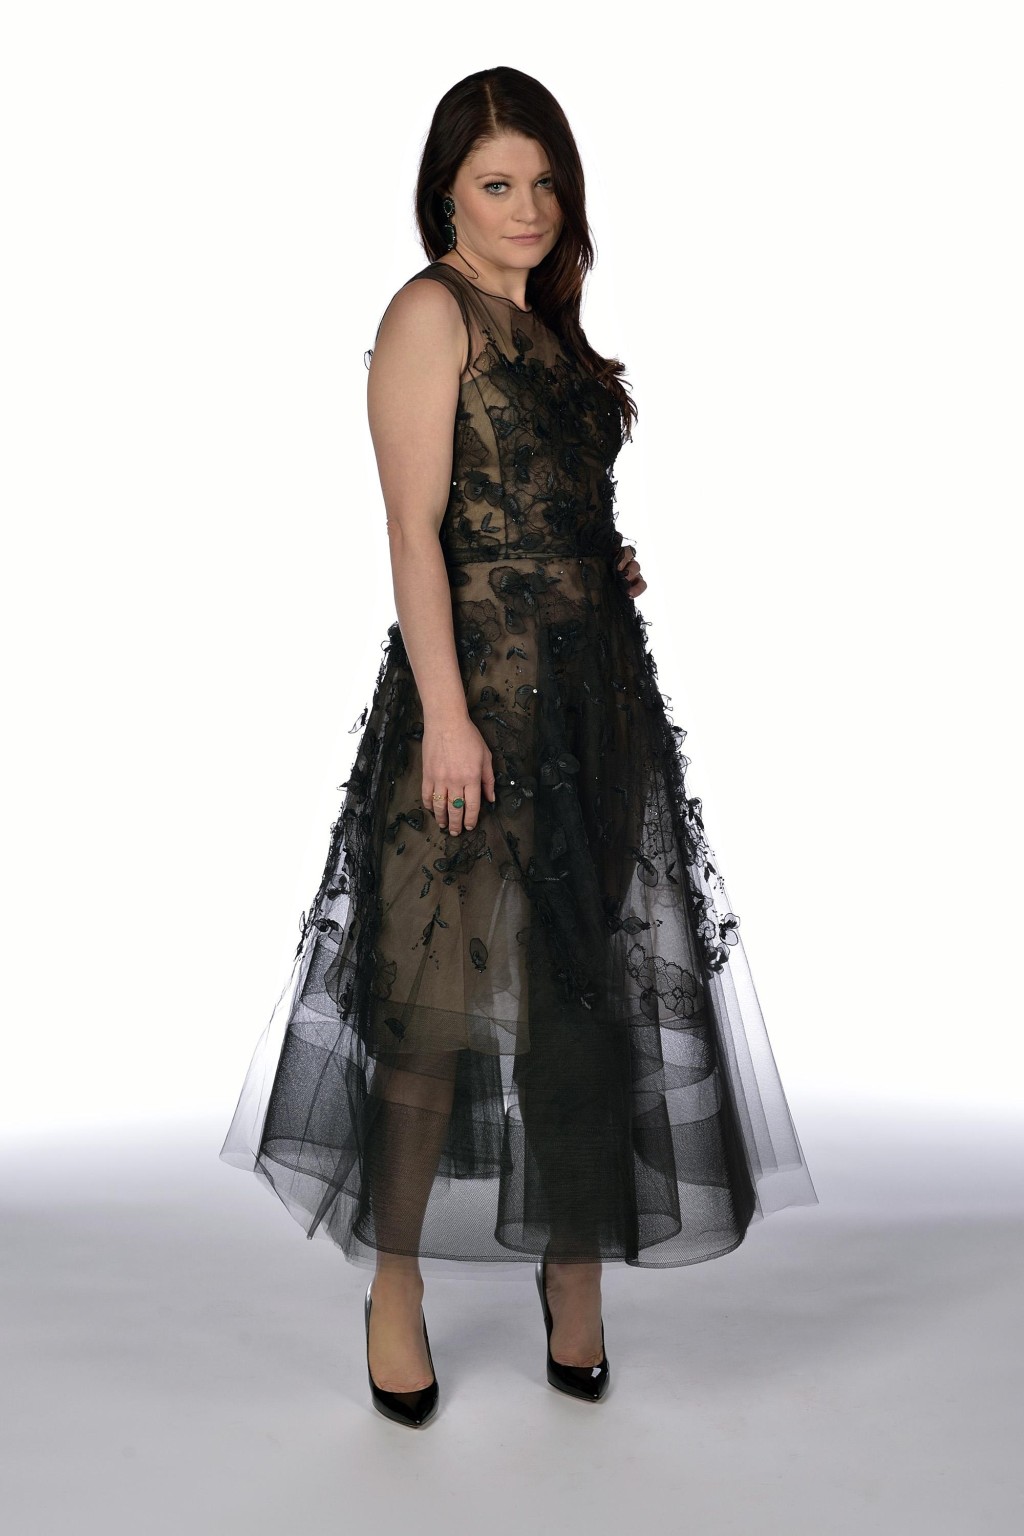 Emilie de ravin trägt ein schwarzes Spitzenkleid bei der Vorführung von Once Upon A Time Staffel 4
 #75185141